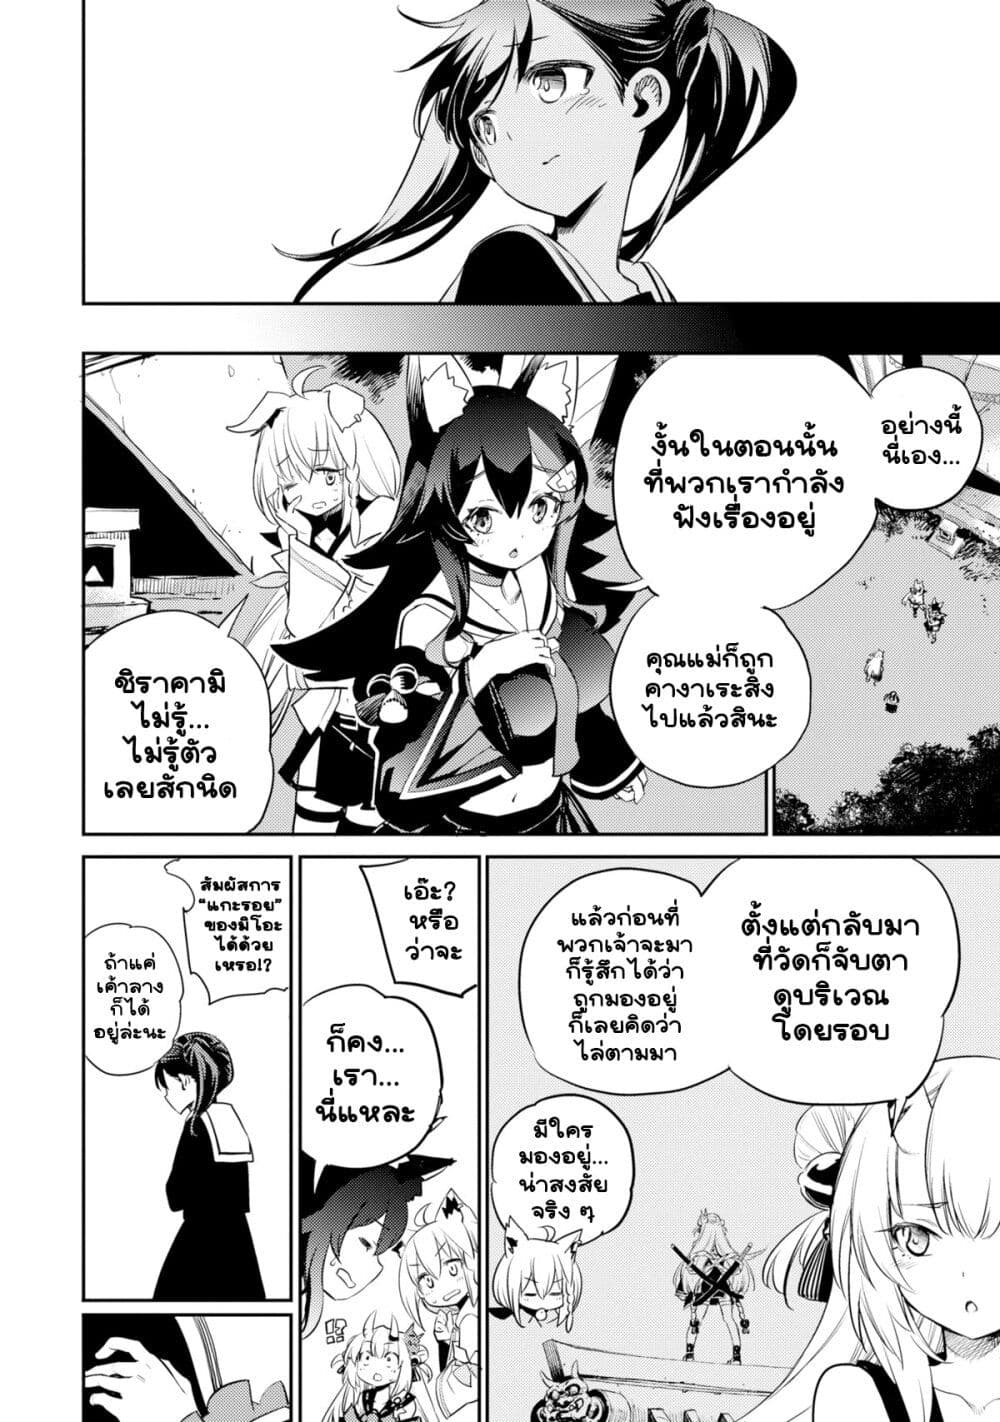 Holoearth Chronicles SideE ~Yamato Phantasia~ ตอนที่ 13 (12)